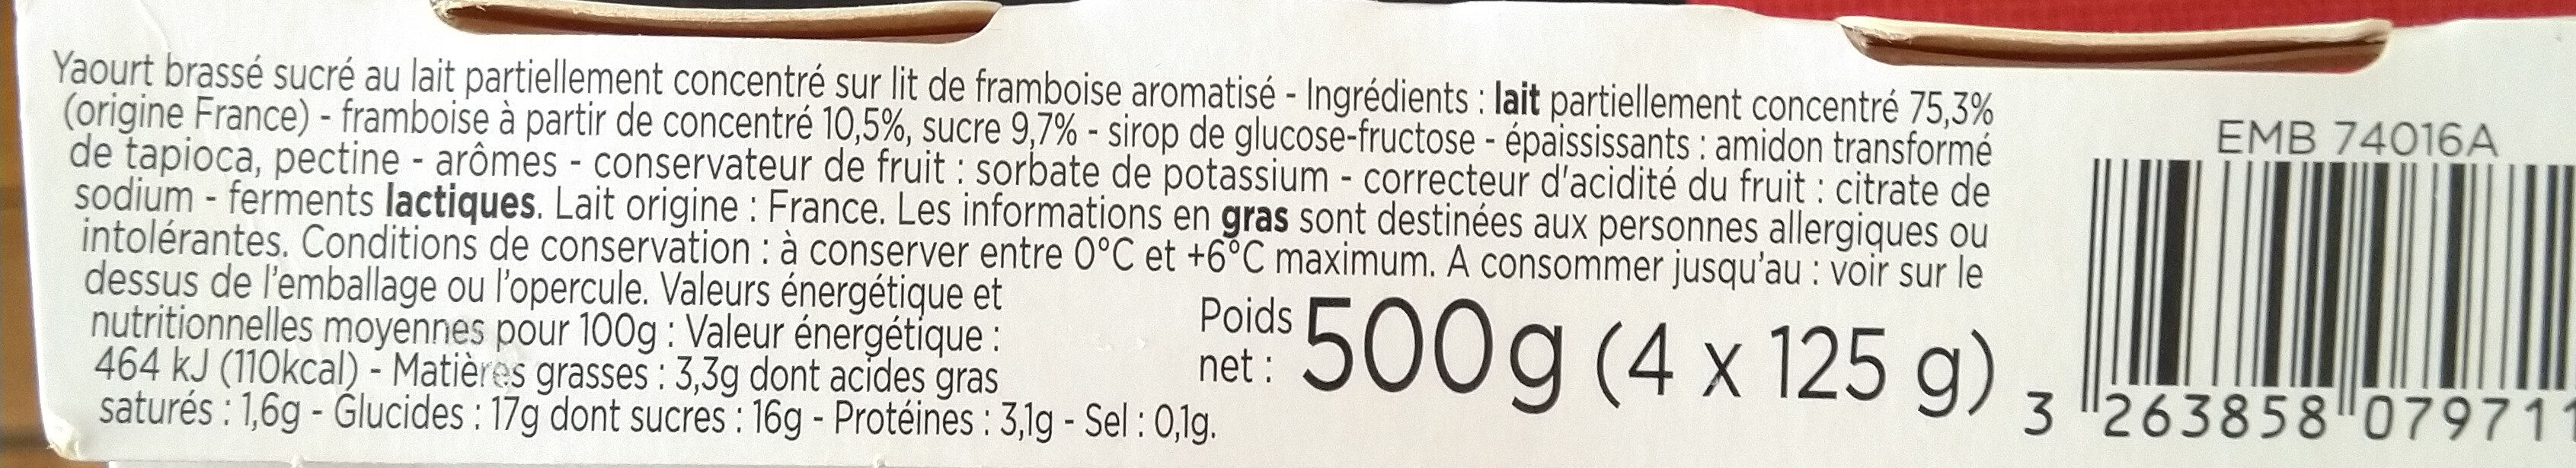 yaourt brassé lait entier lit framboise - Ingredients - fr